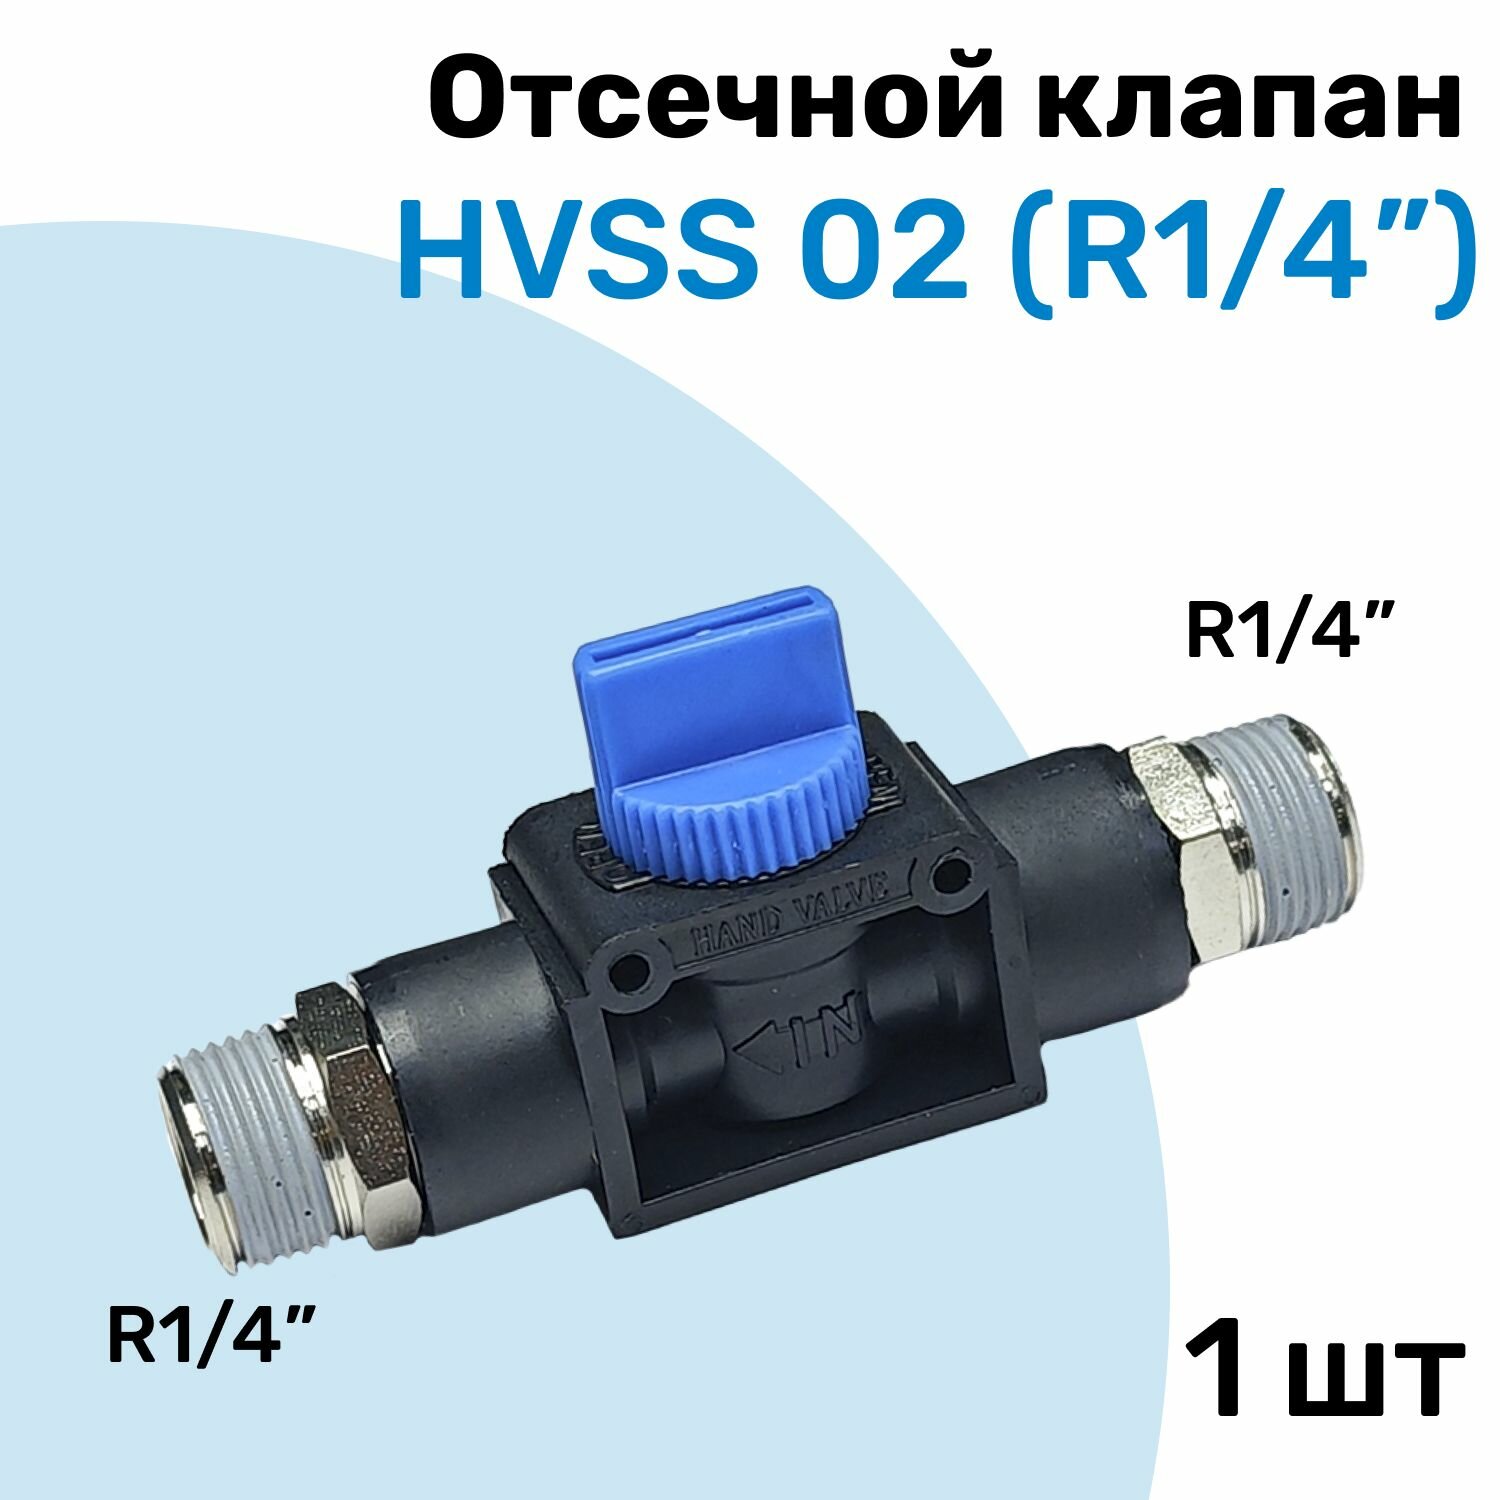 Отсечной клапан HVSS 02 R1/4" Клапан сброса давления Пневмофитинг NBPT